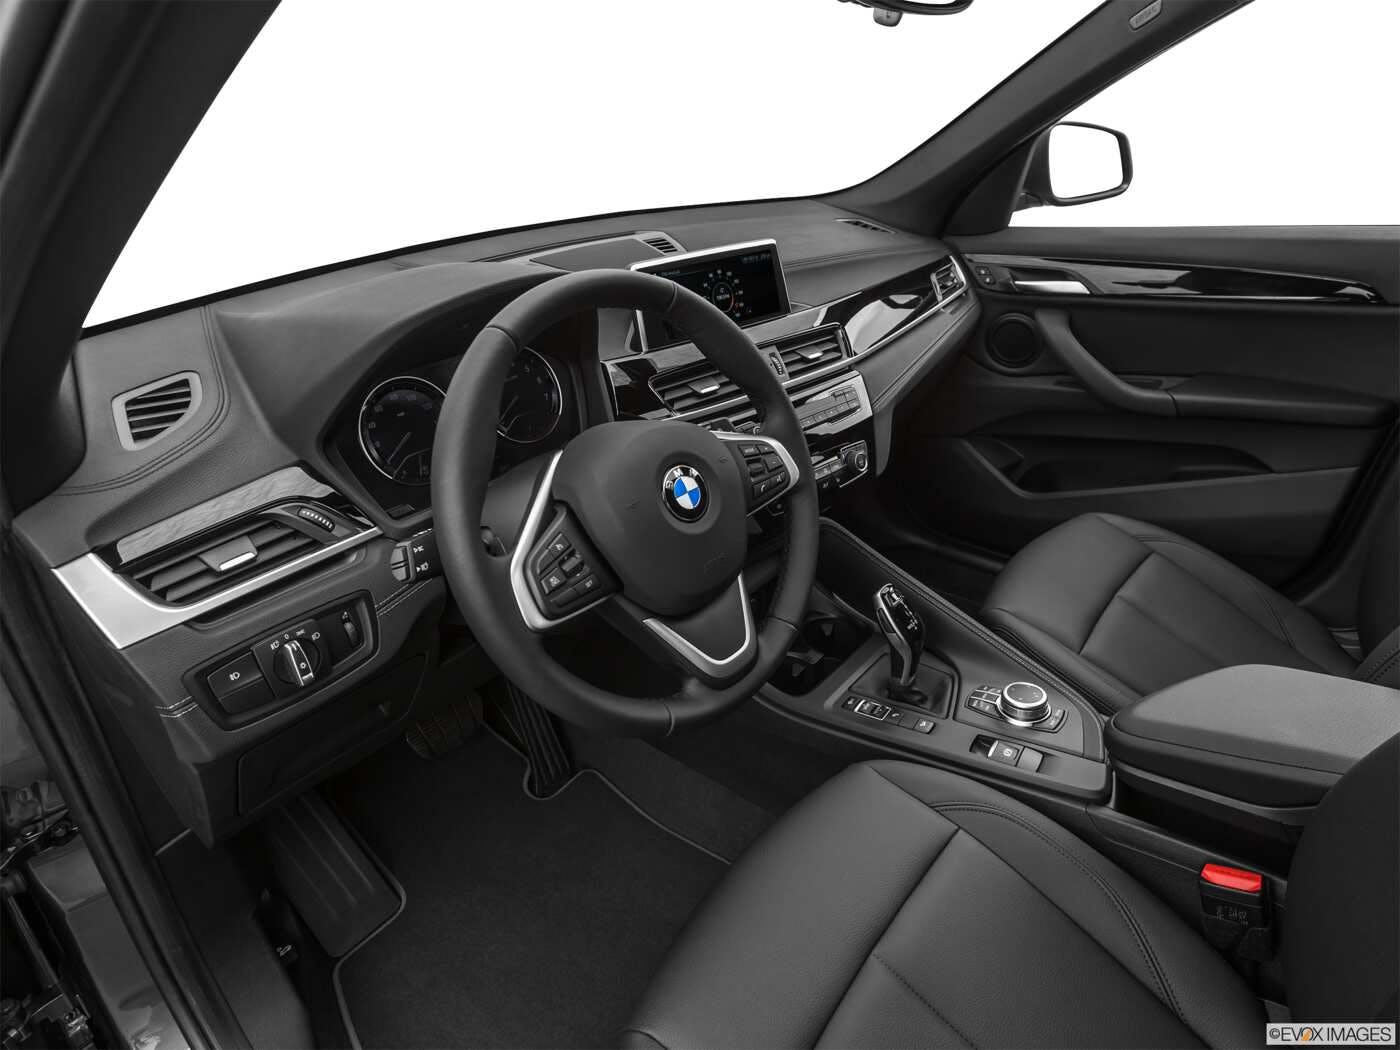 2021 BMW X1 Review | Pricing, Trims & Photos - TrueCar